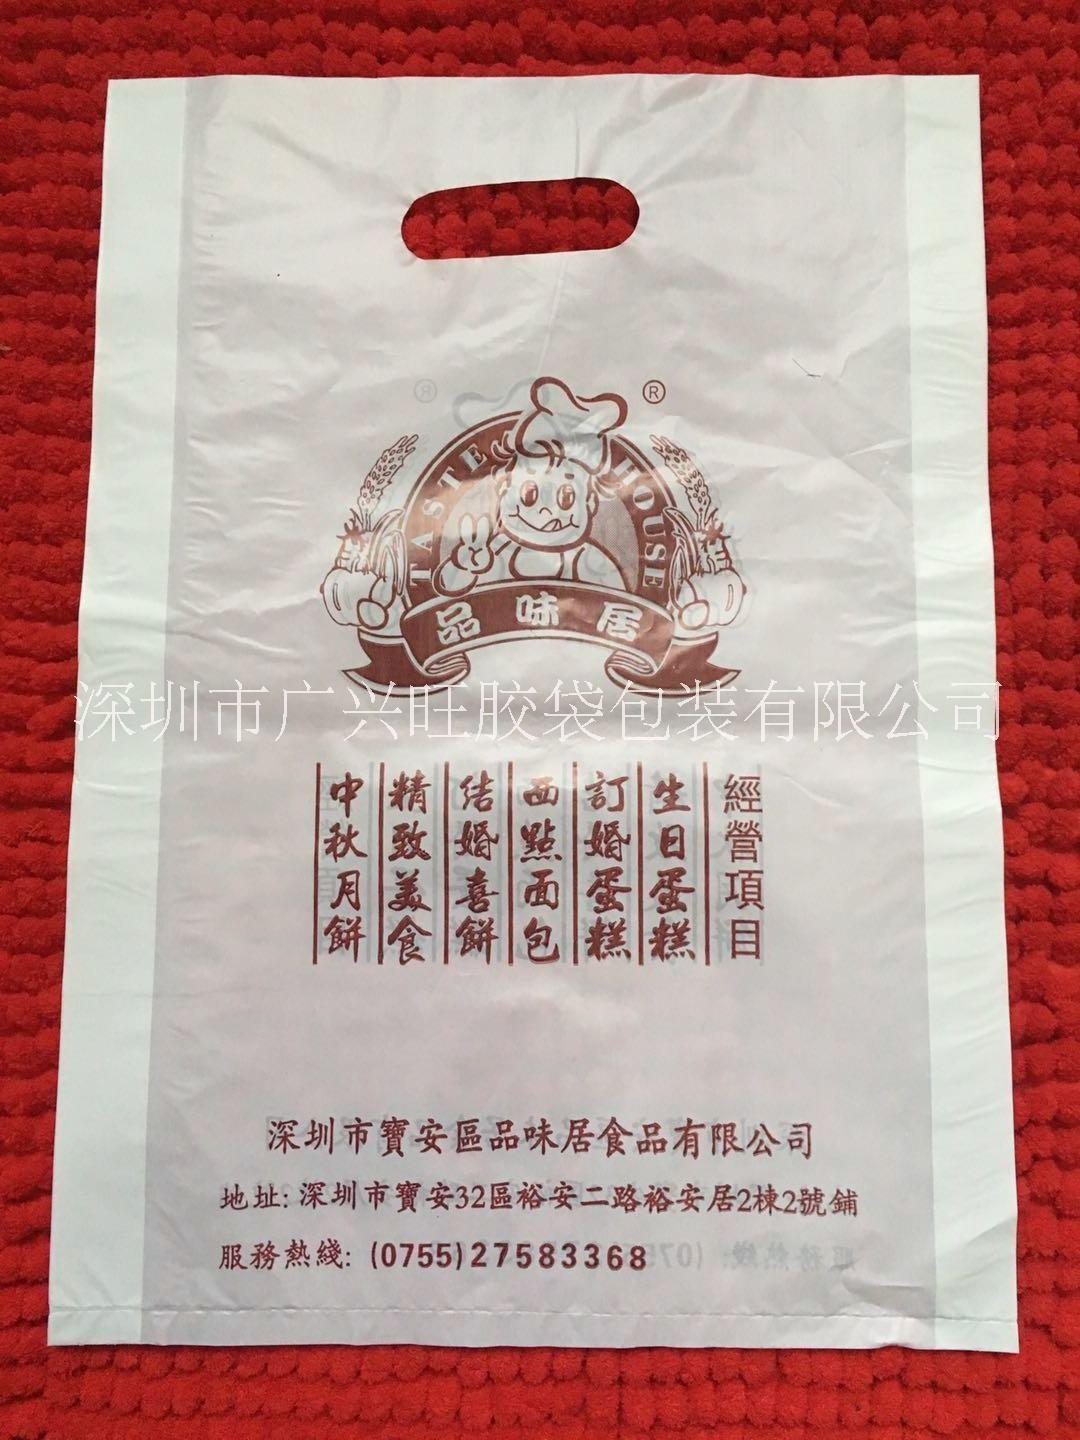 降解背心环保塑料袋定制各种环保塑料袋 超市购物袋 深圳市广兴旺胶袋厂